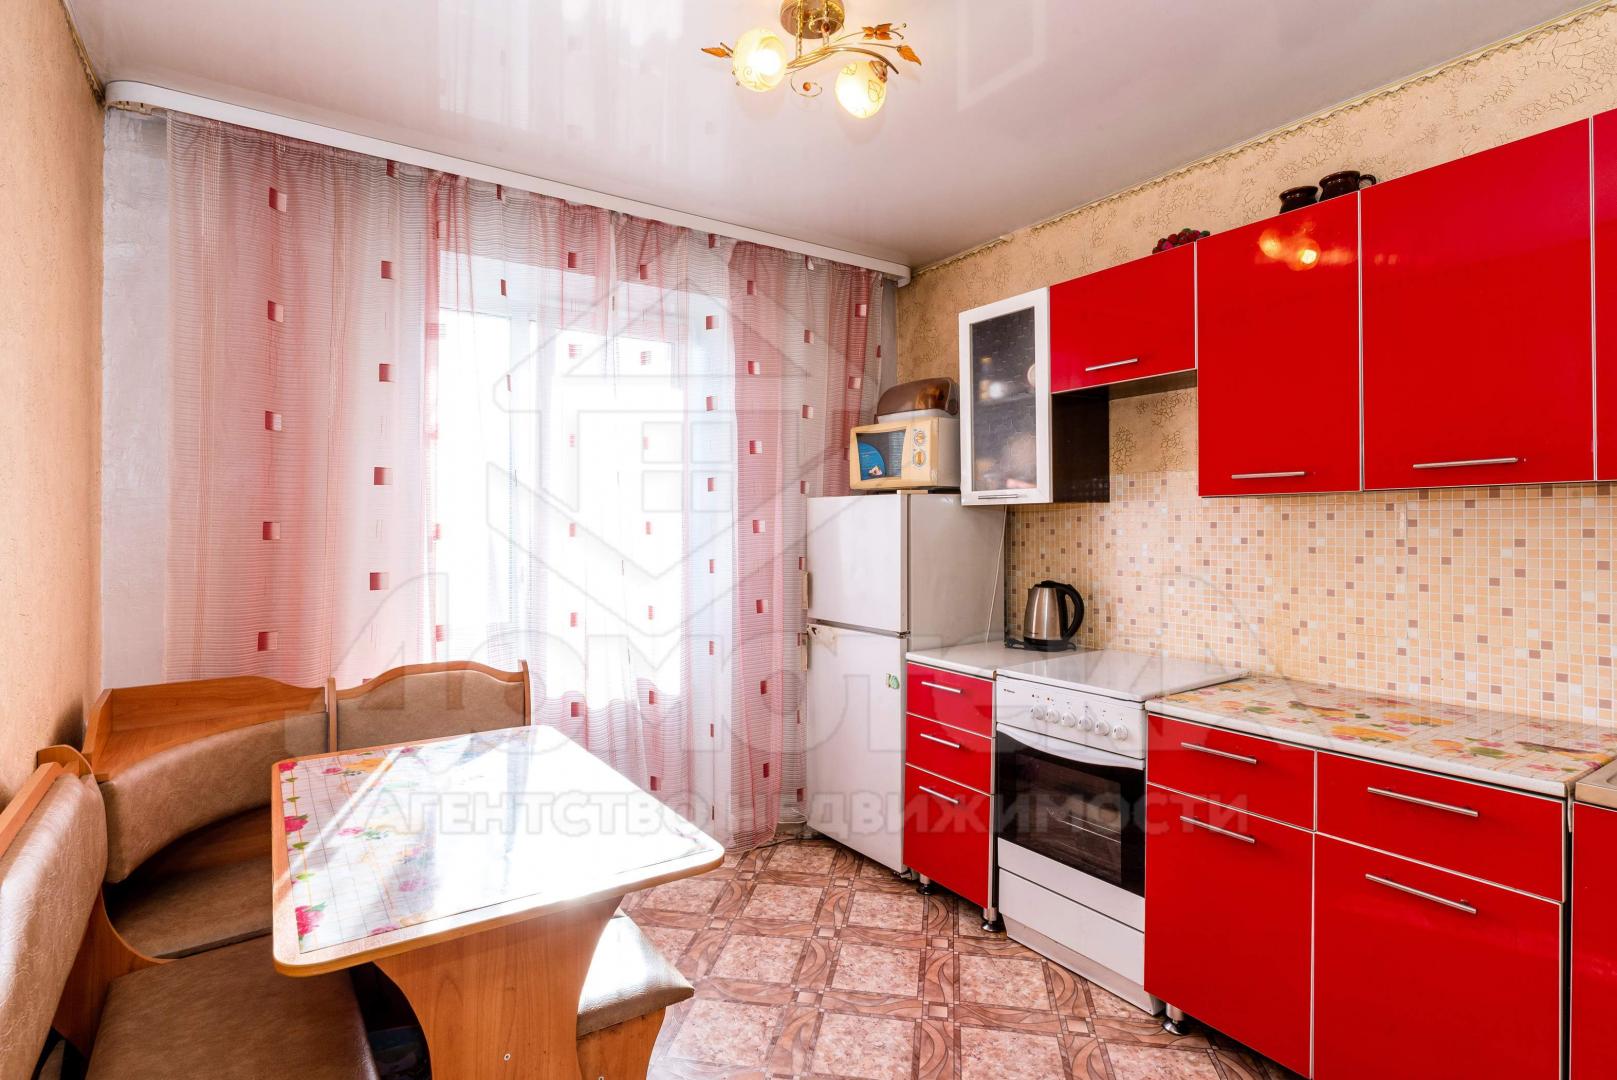 Продам квартиру в Металлургов по адресу Молодёжная улица, 10, площадь 301 квм Недвижимость Кемеровская  область (Россия)  В коридоре имеется небольшая кладовая